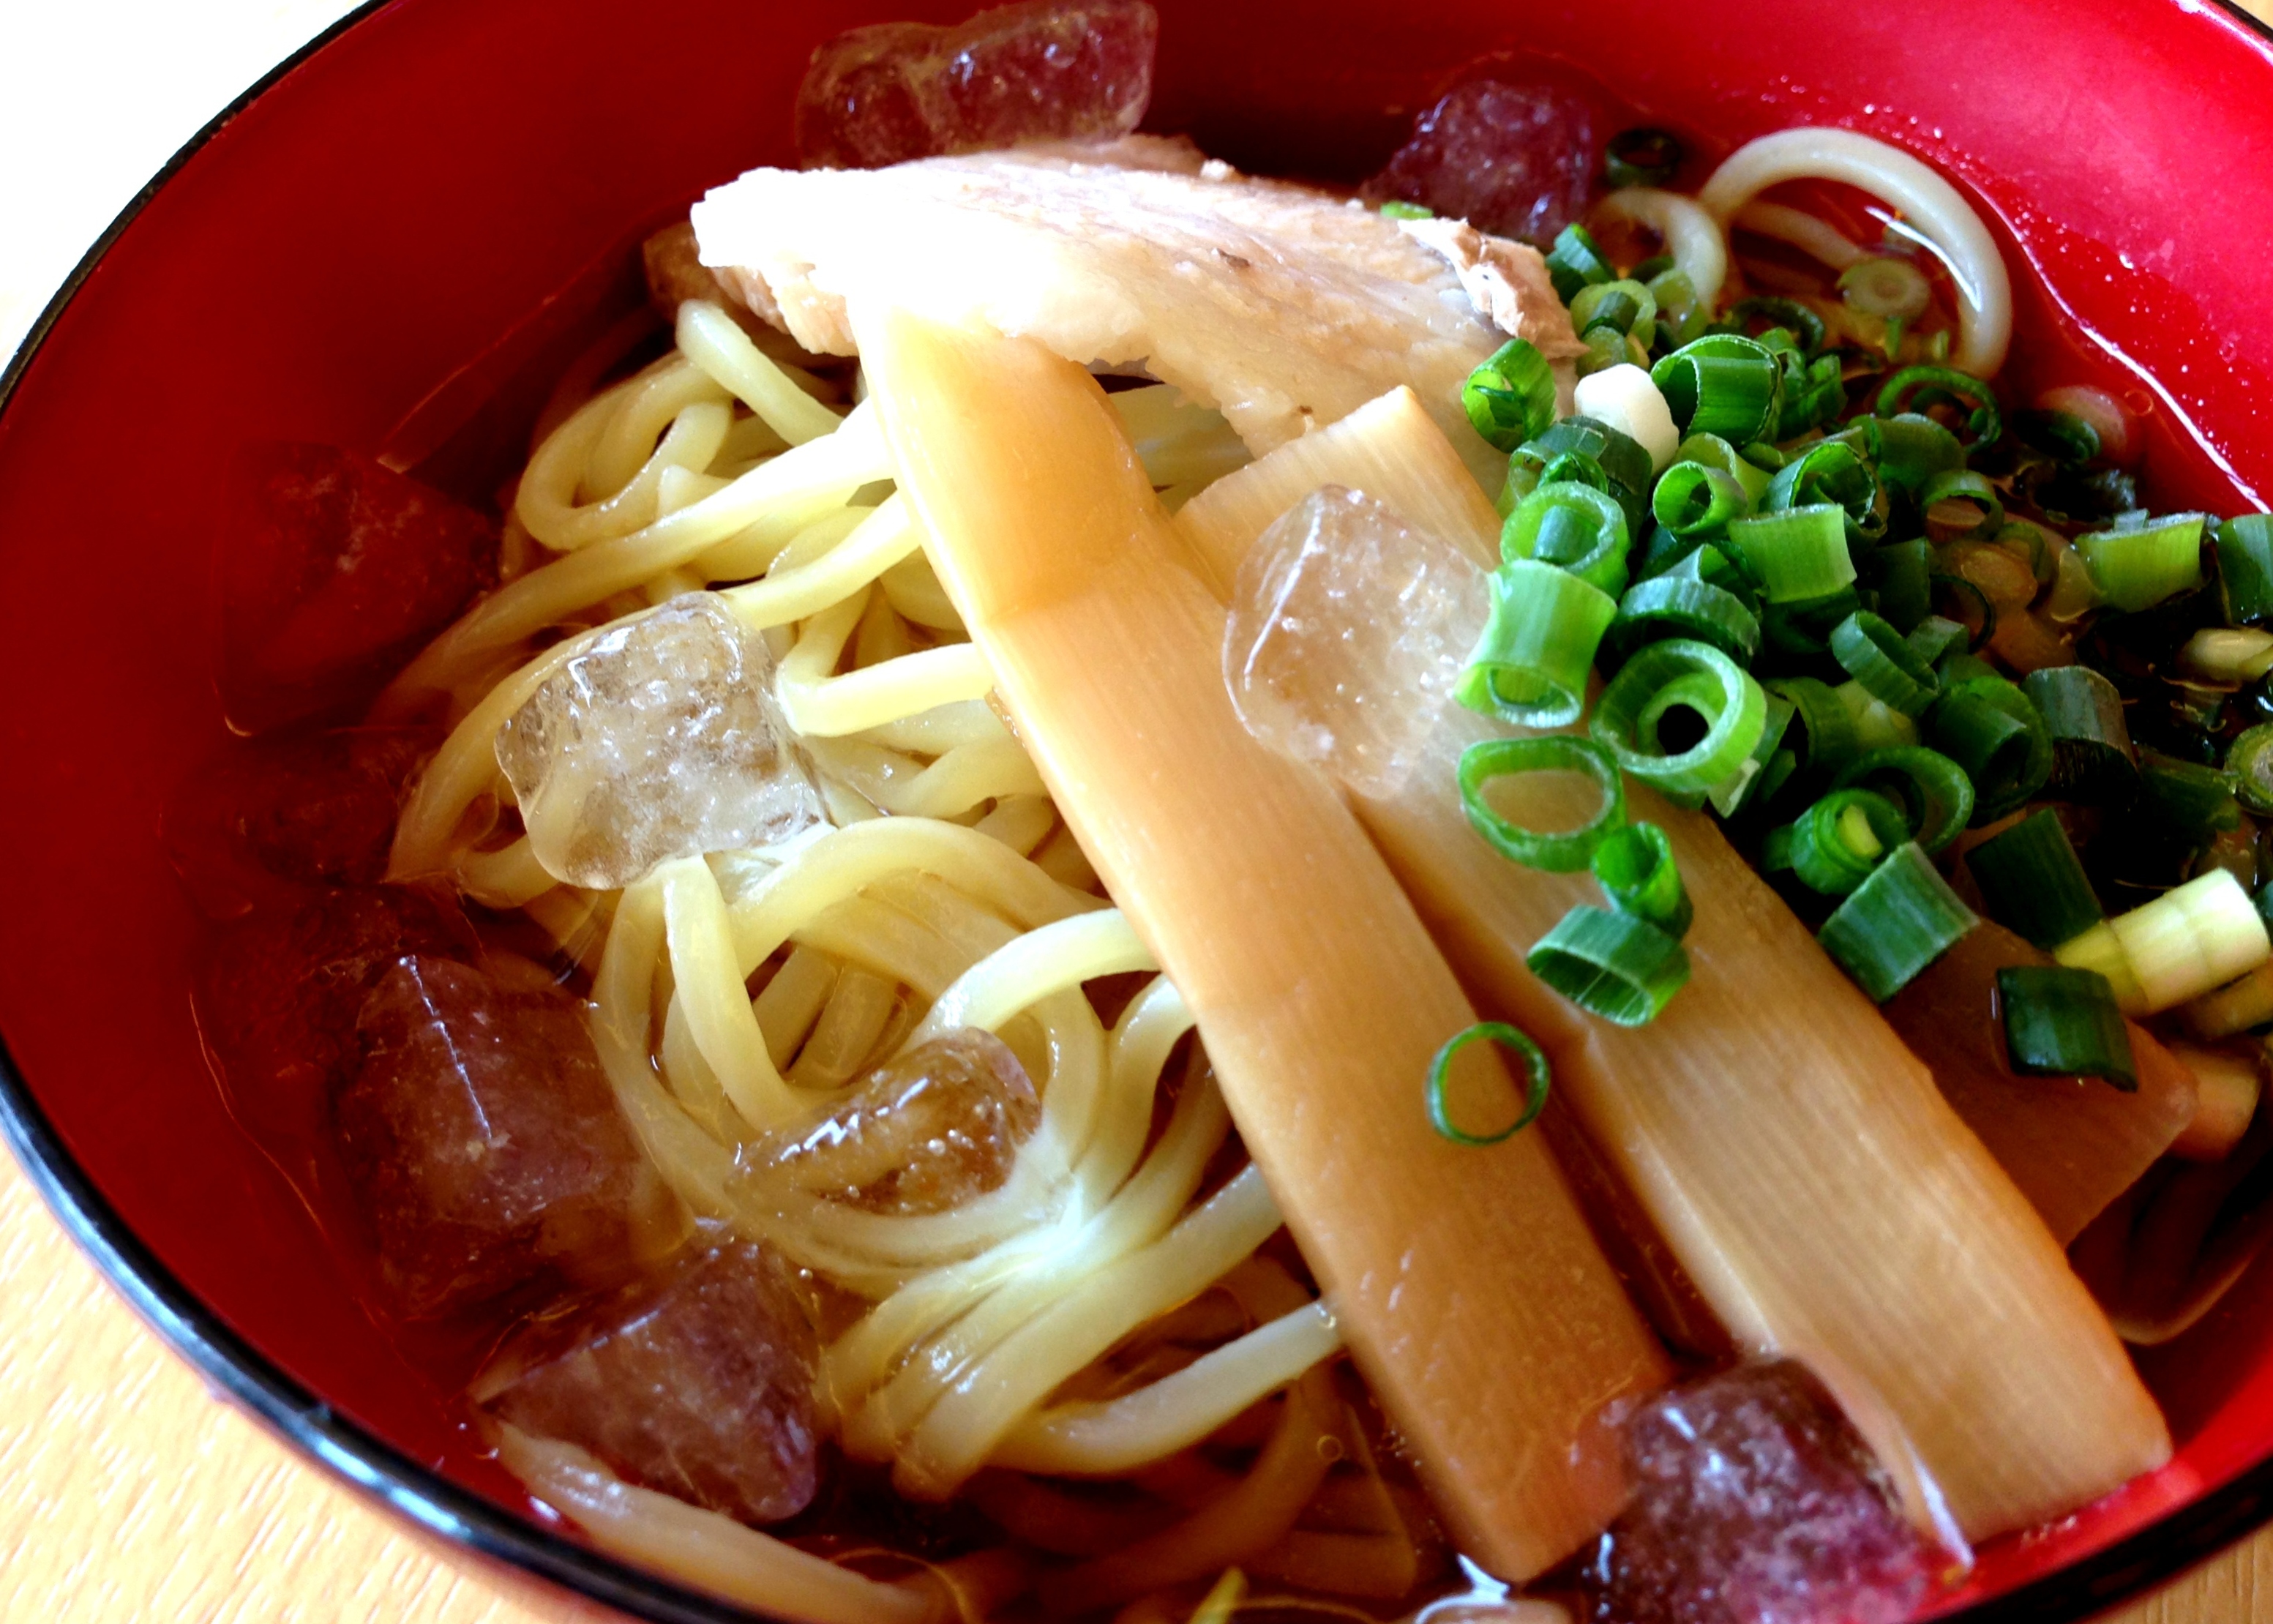 【冷やしラーメン】<br>ラーメン消費量日本一の山形が誇る夏のご当地グルメ！<br>「どんな猛暑でもラーメンが食べたい！」という県民の熱い要望に応える為生み出された<br>麺もスープもひんやり冷たい、その名通り「冷たいラーメン」です